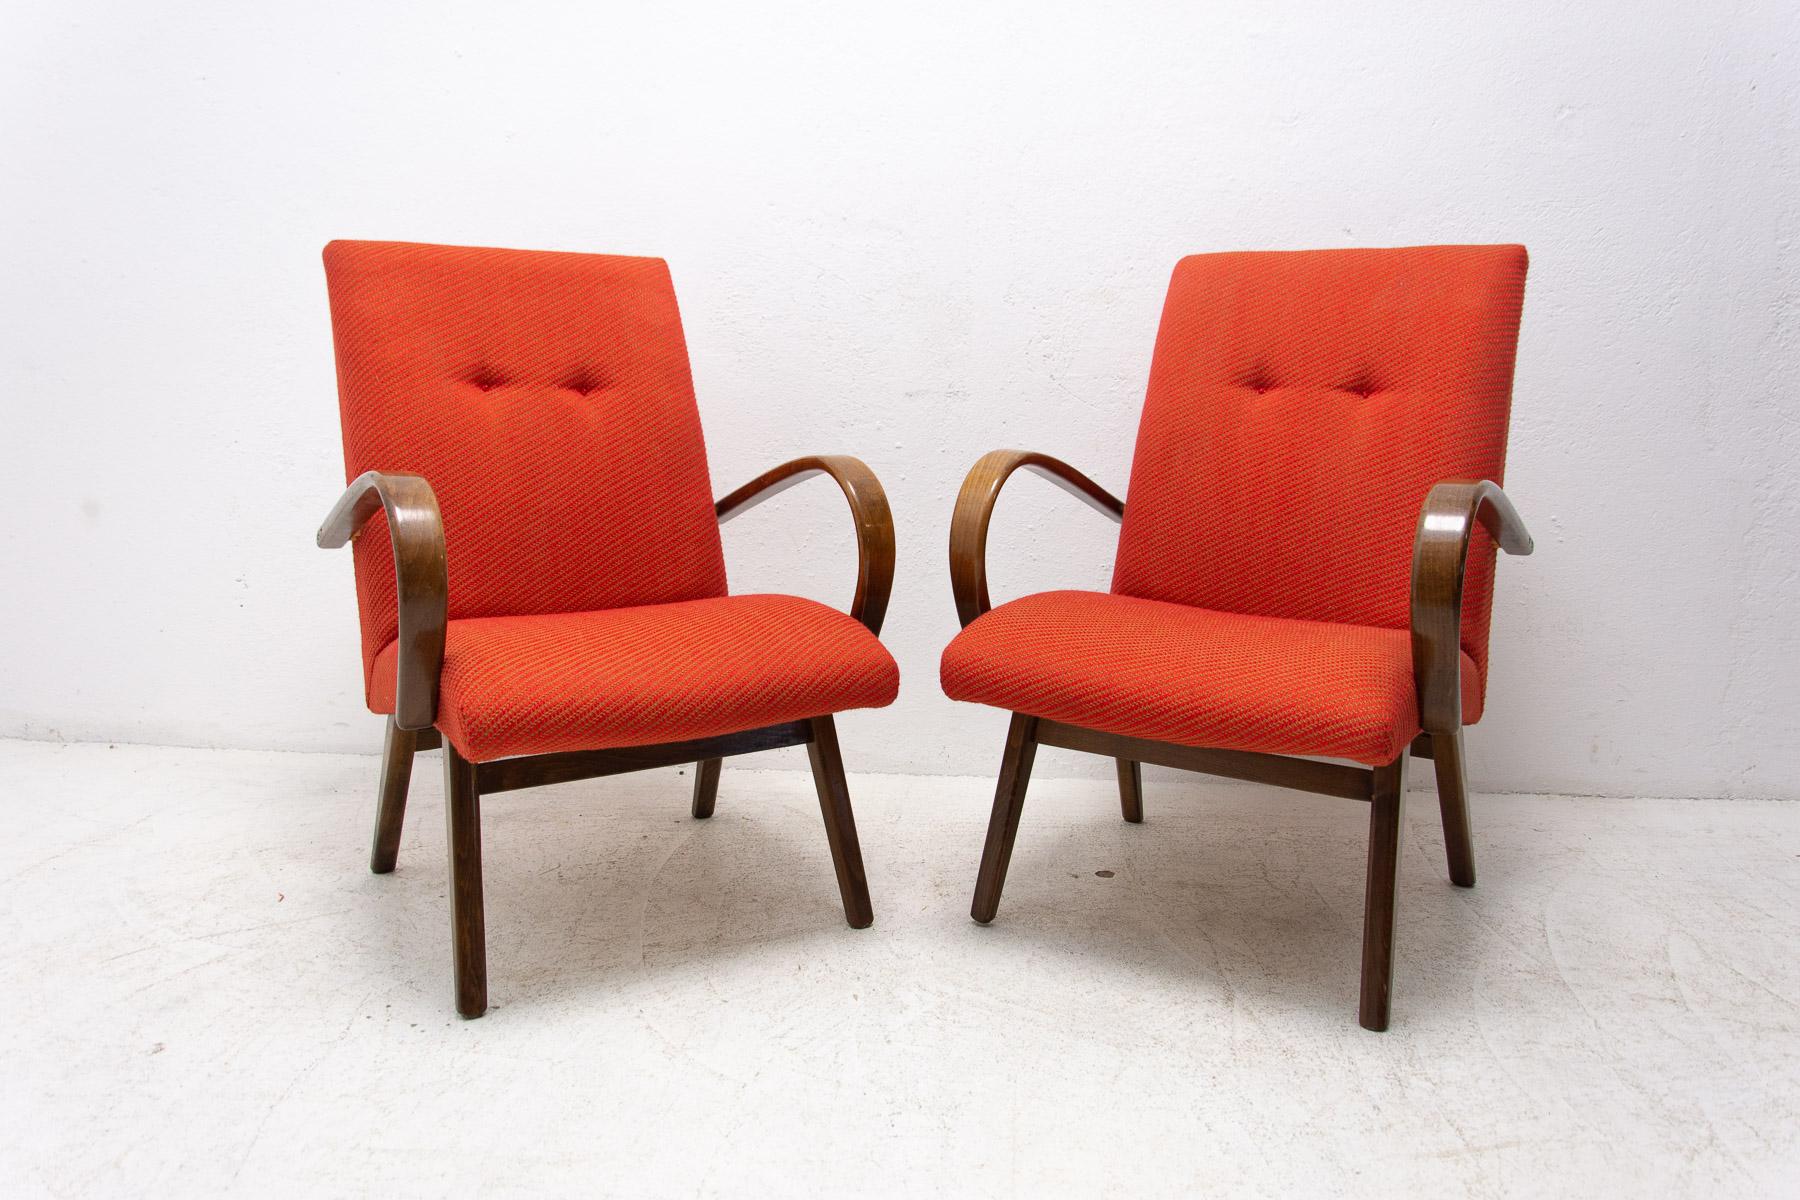 Ces fauteuils en bois courbé ont été conçus par Jaroslav Šmídek et fabriqués dans l'ancienne Tchécoslovaquie dans les années 1970.

Les chaises sont stables. Ils sont en très bon état vintage, sans aucun dommage.

Fabriqué en bois de hêtre

Le